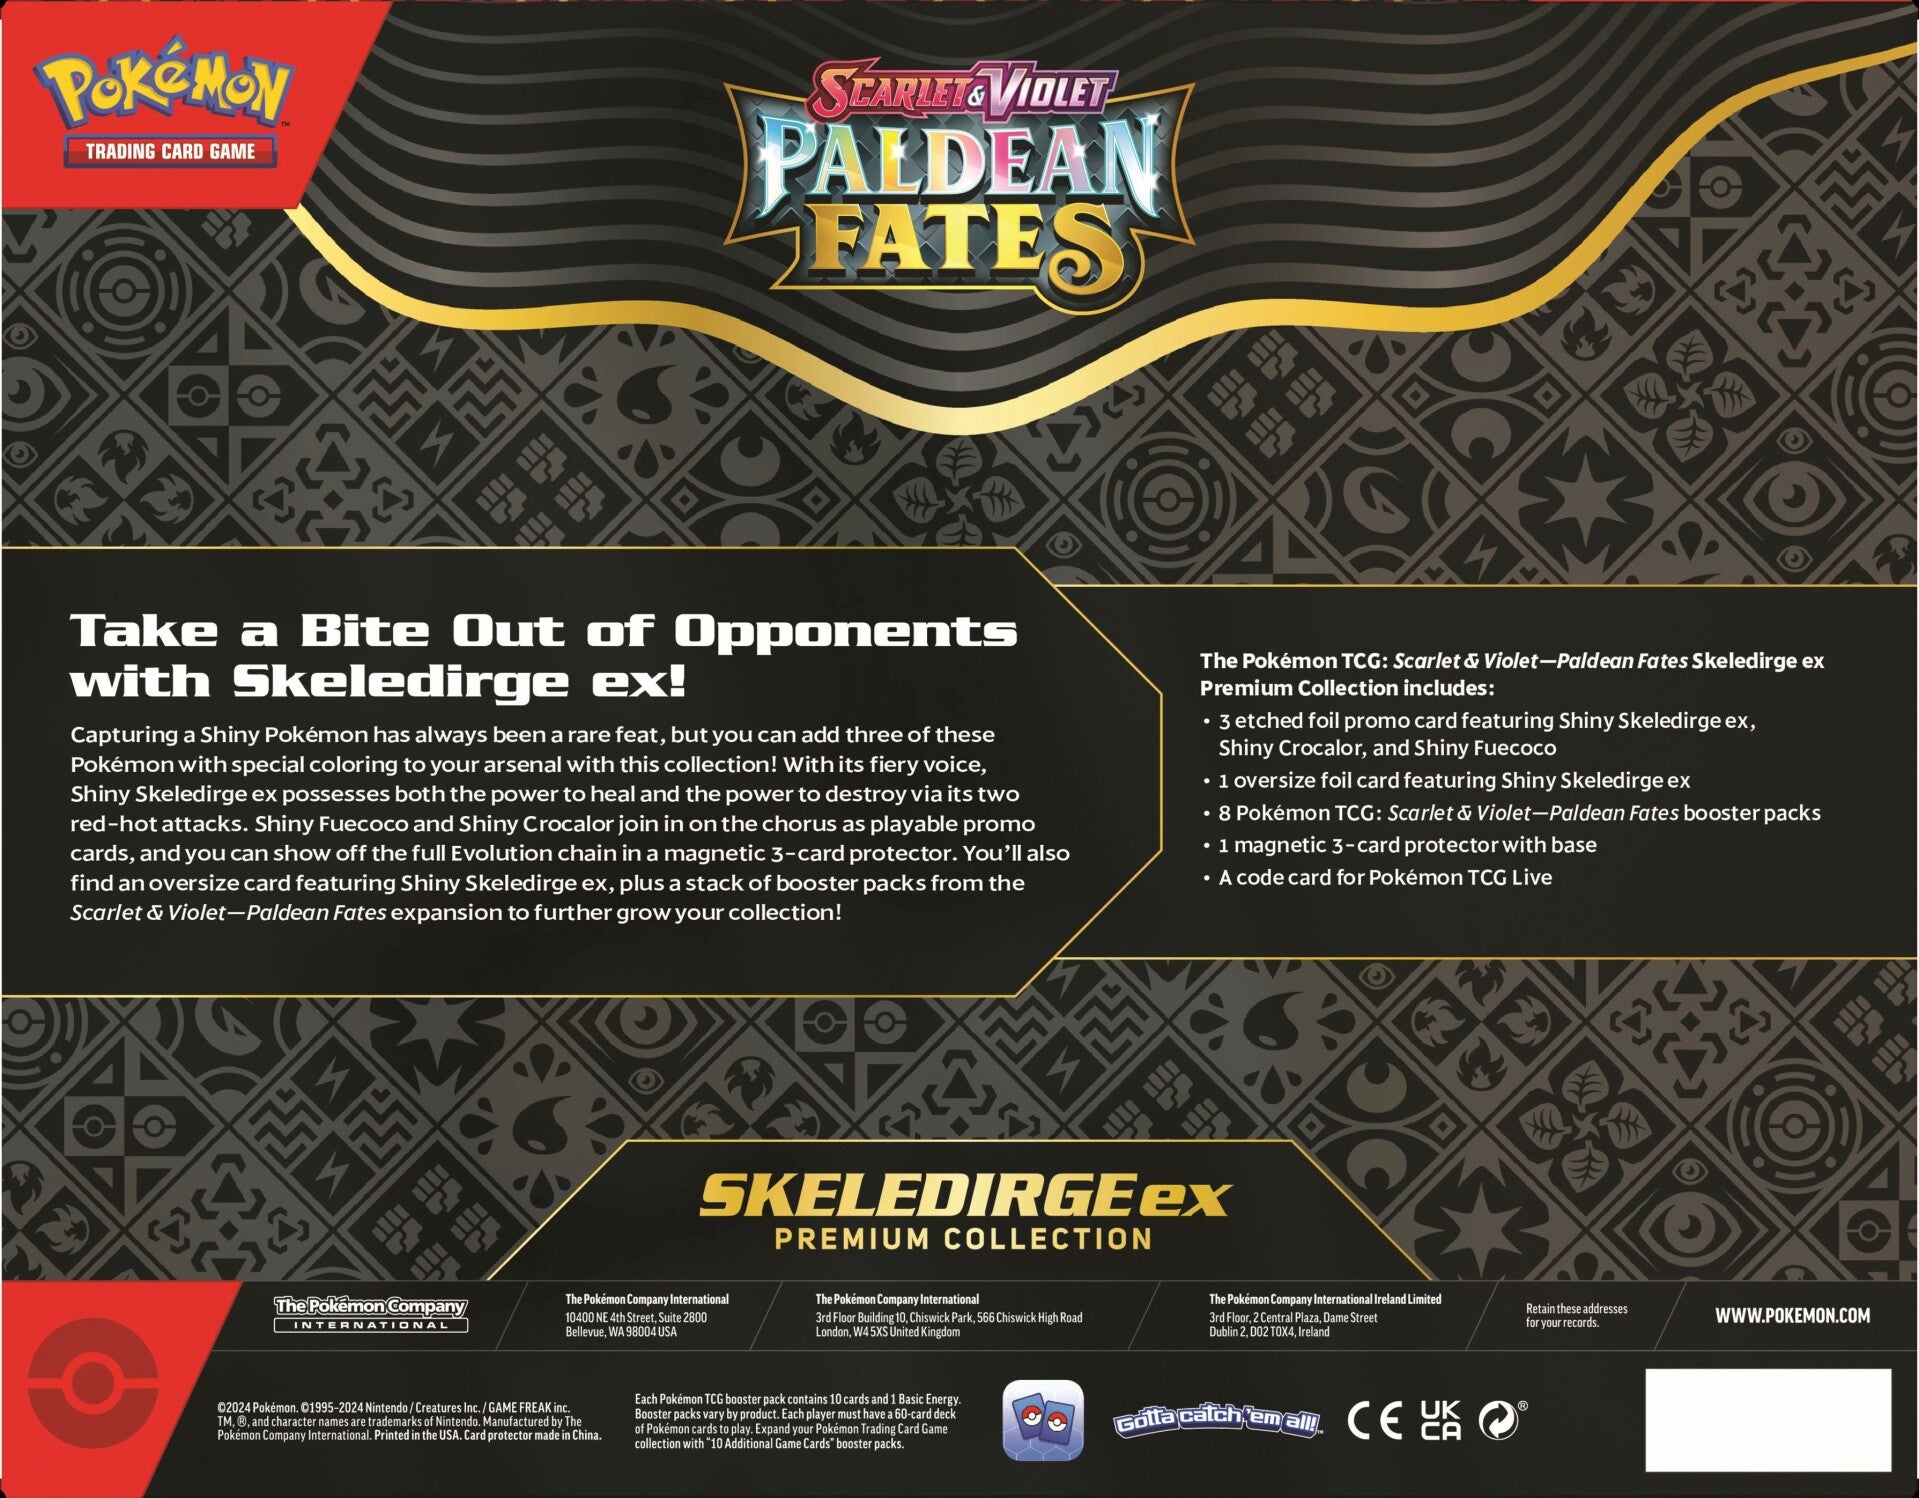 Paldean Fates - Premium Collection Box - Skeledirge ex